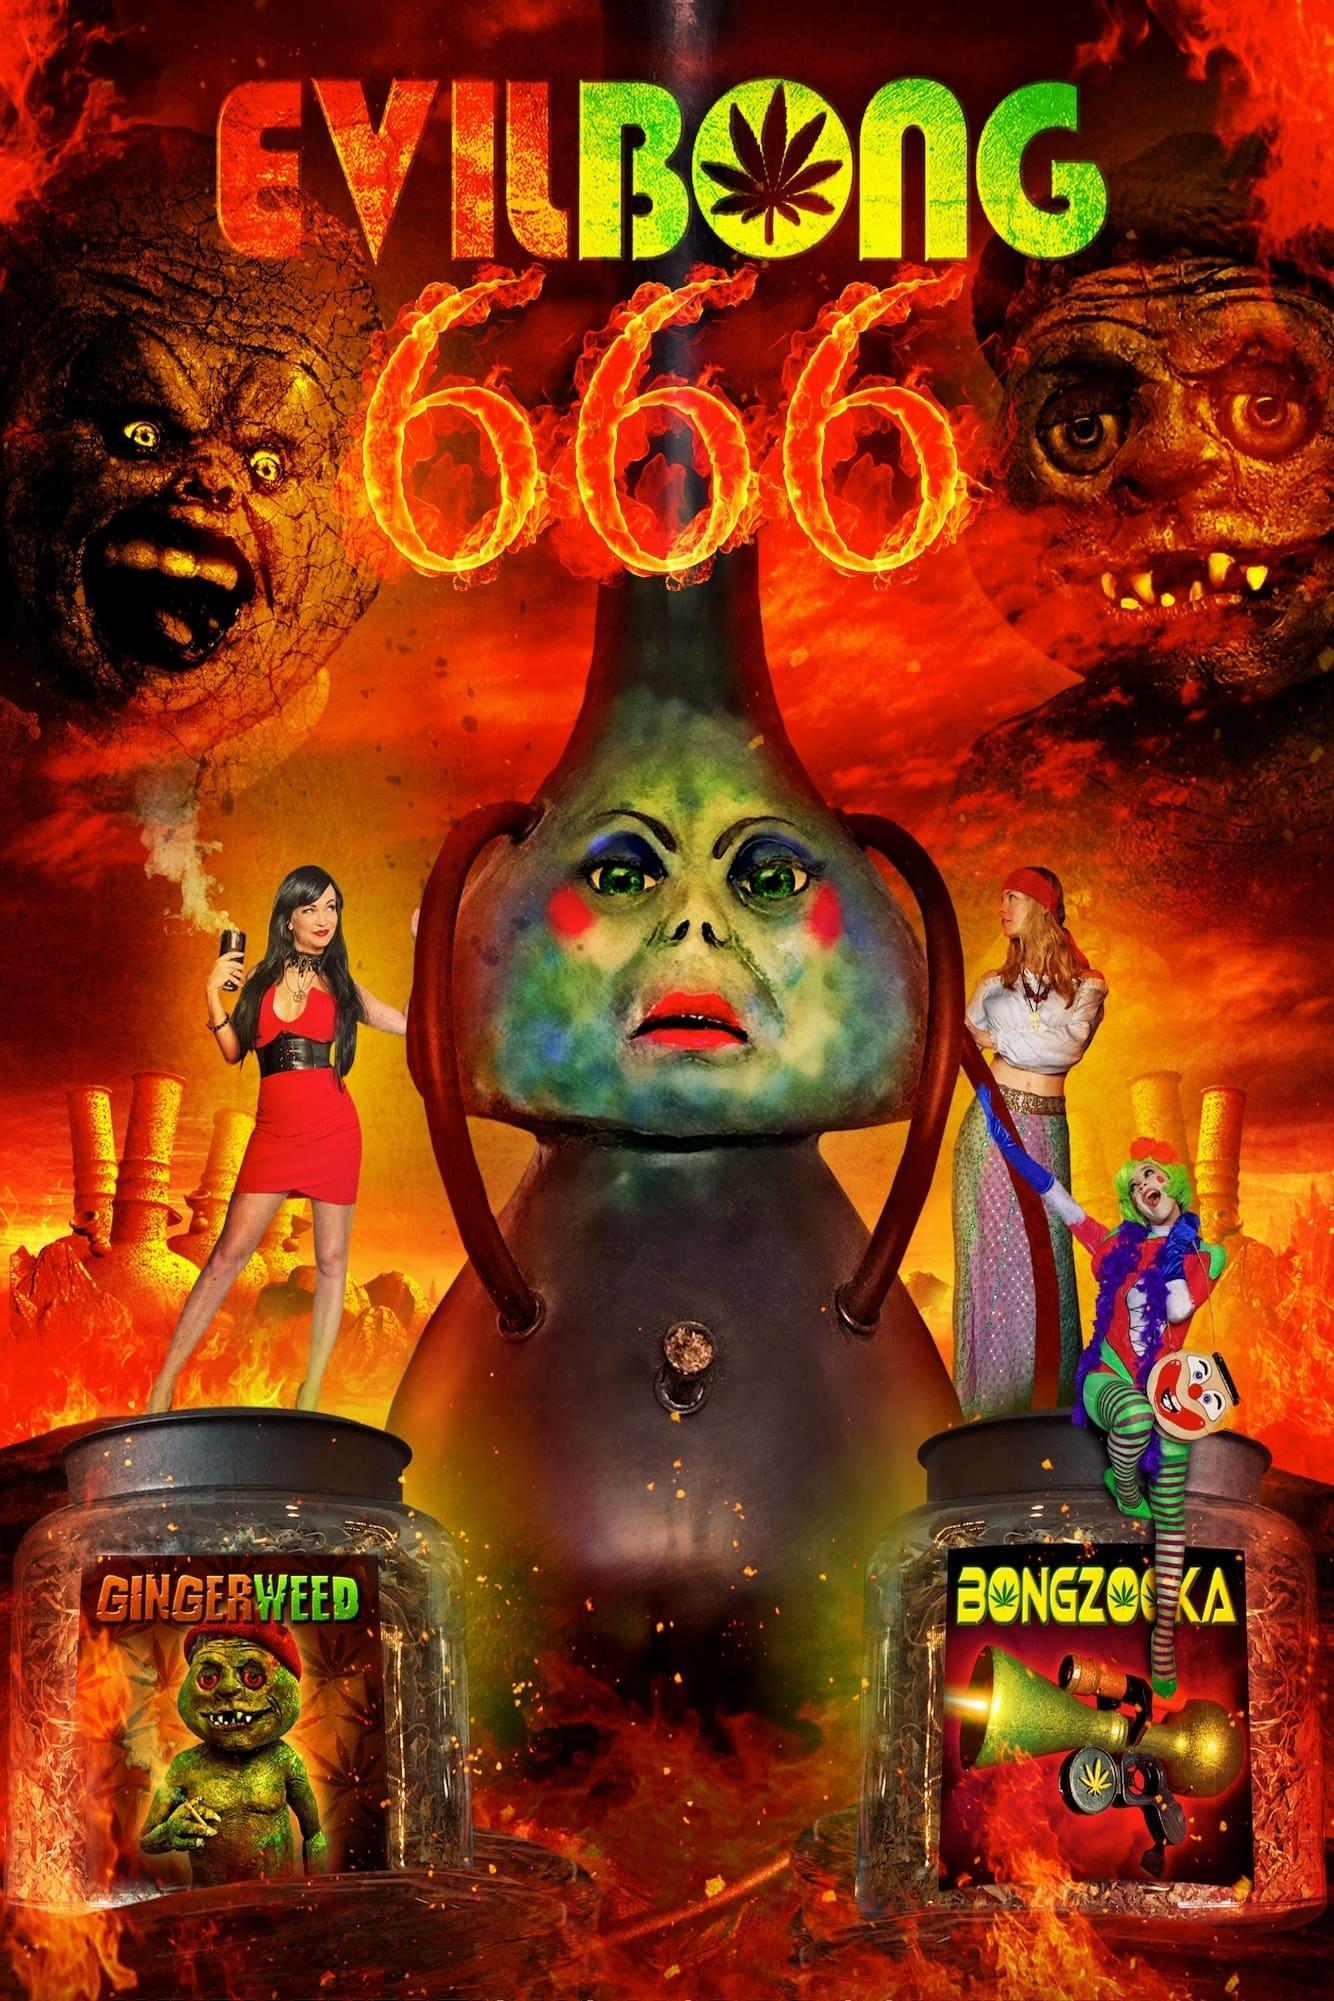 Evil Bong 666 poster